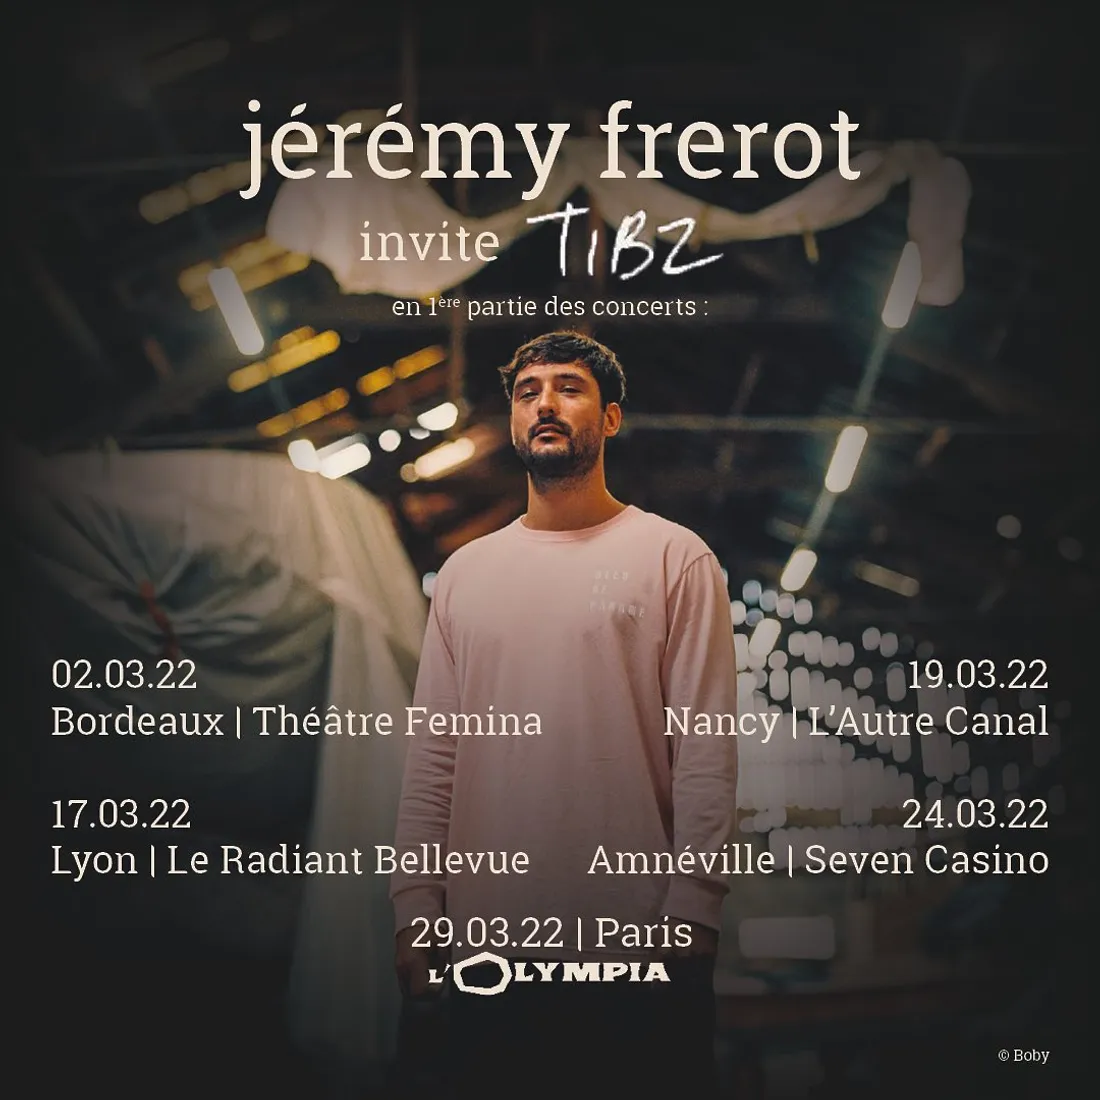 Un événement à ne pas manquer pour les fans de Jérémy Frérot